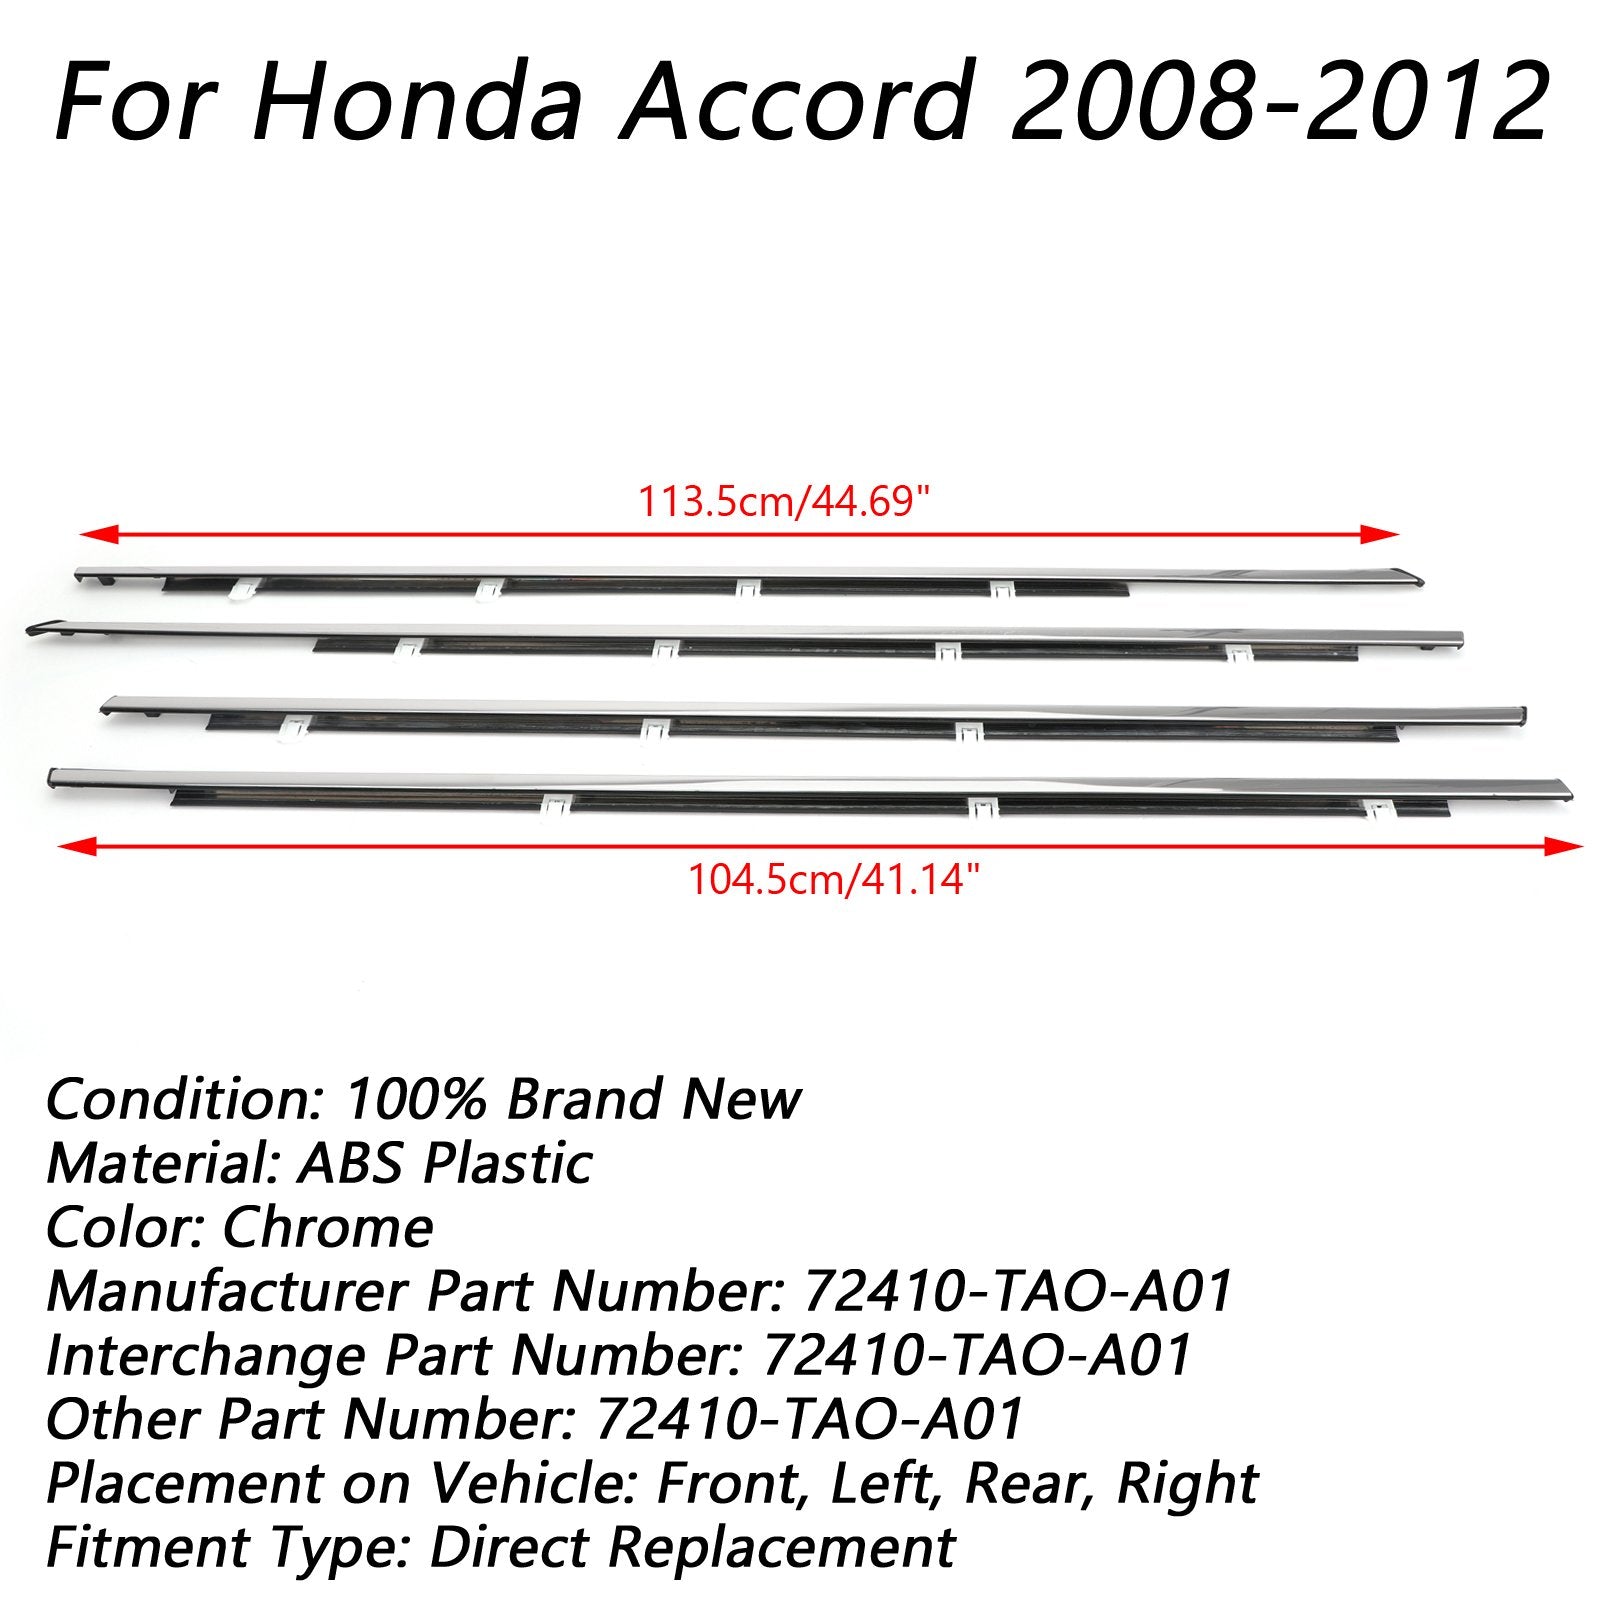 Honda Accord 2008-2012, burlete cromado, moldura para ventana, cinturón de sellado, 4 piezas genéricas